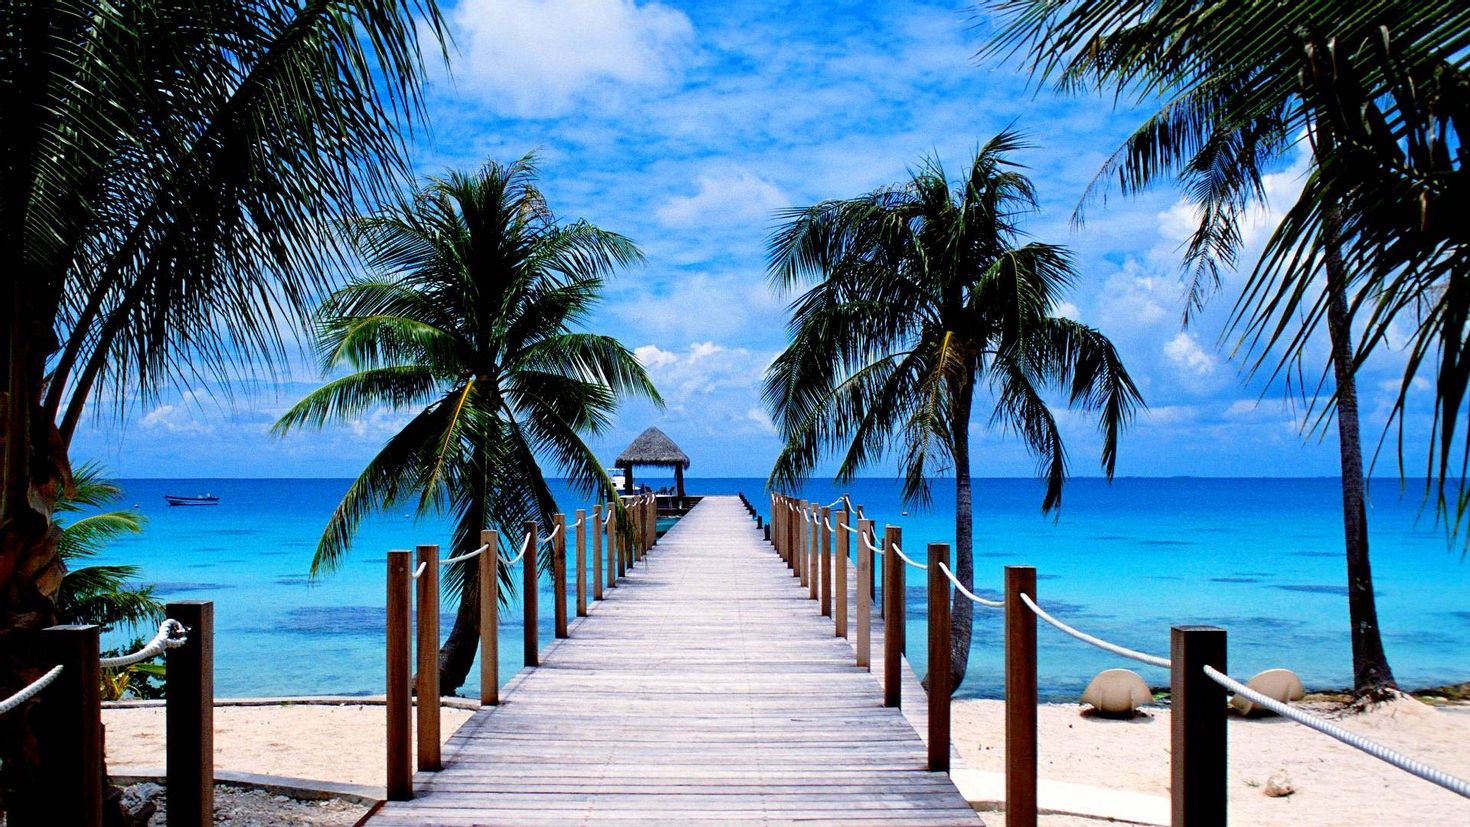 Картинки. Море пляж. Райский пляж. Красивый пляж на рабочий стол. Пальмы и океан.